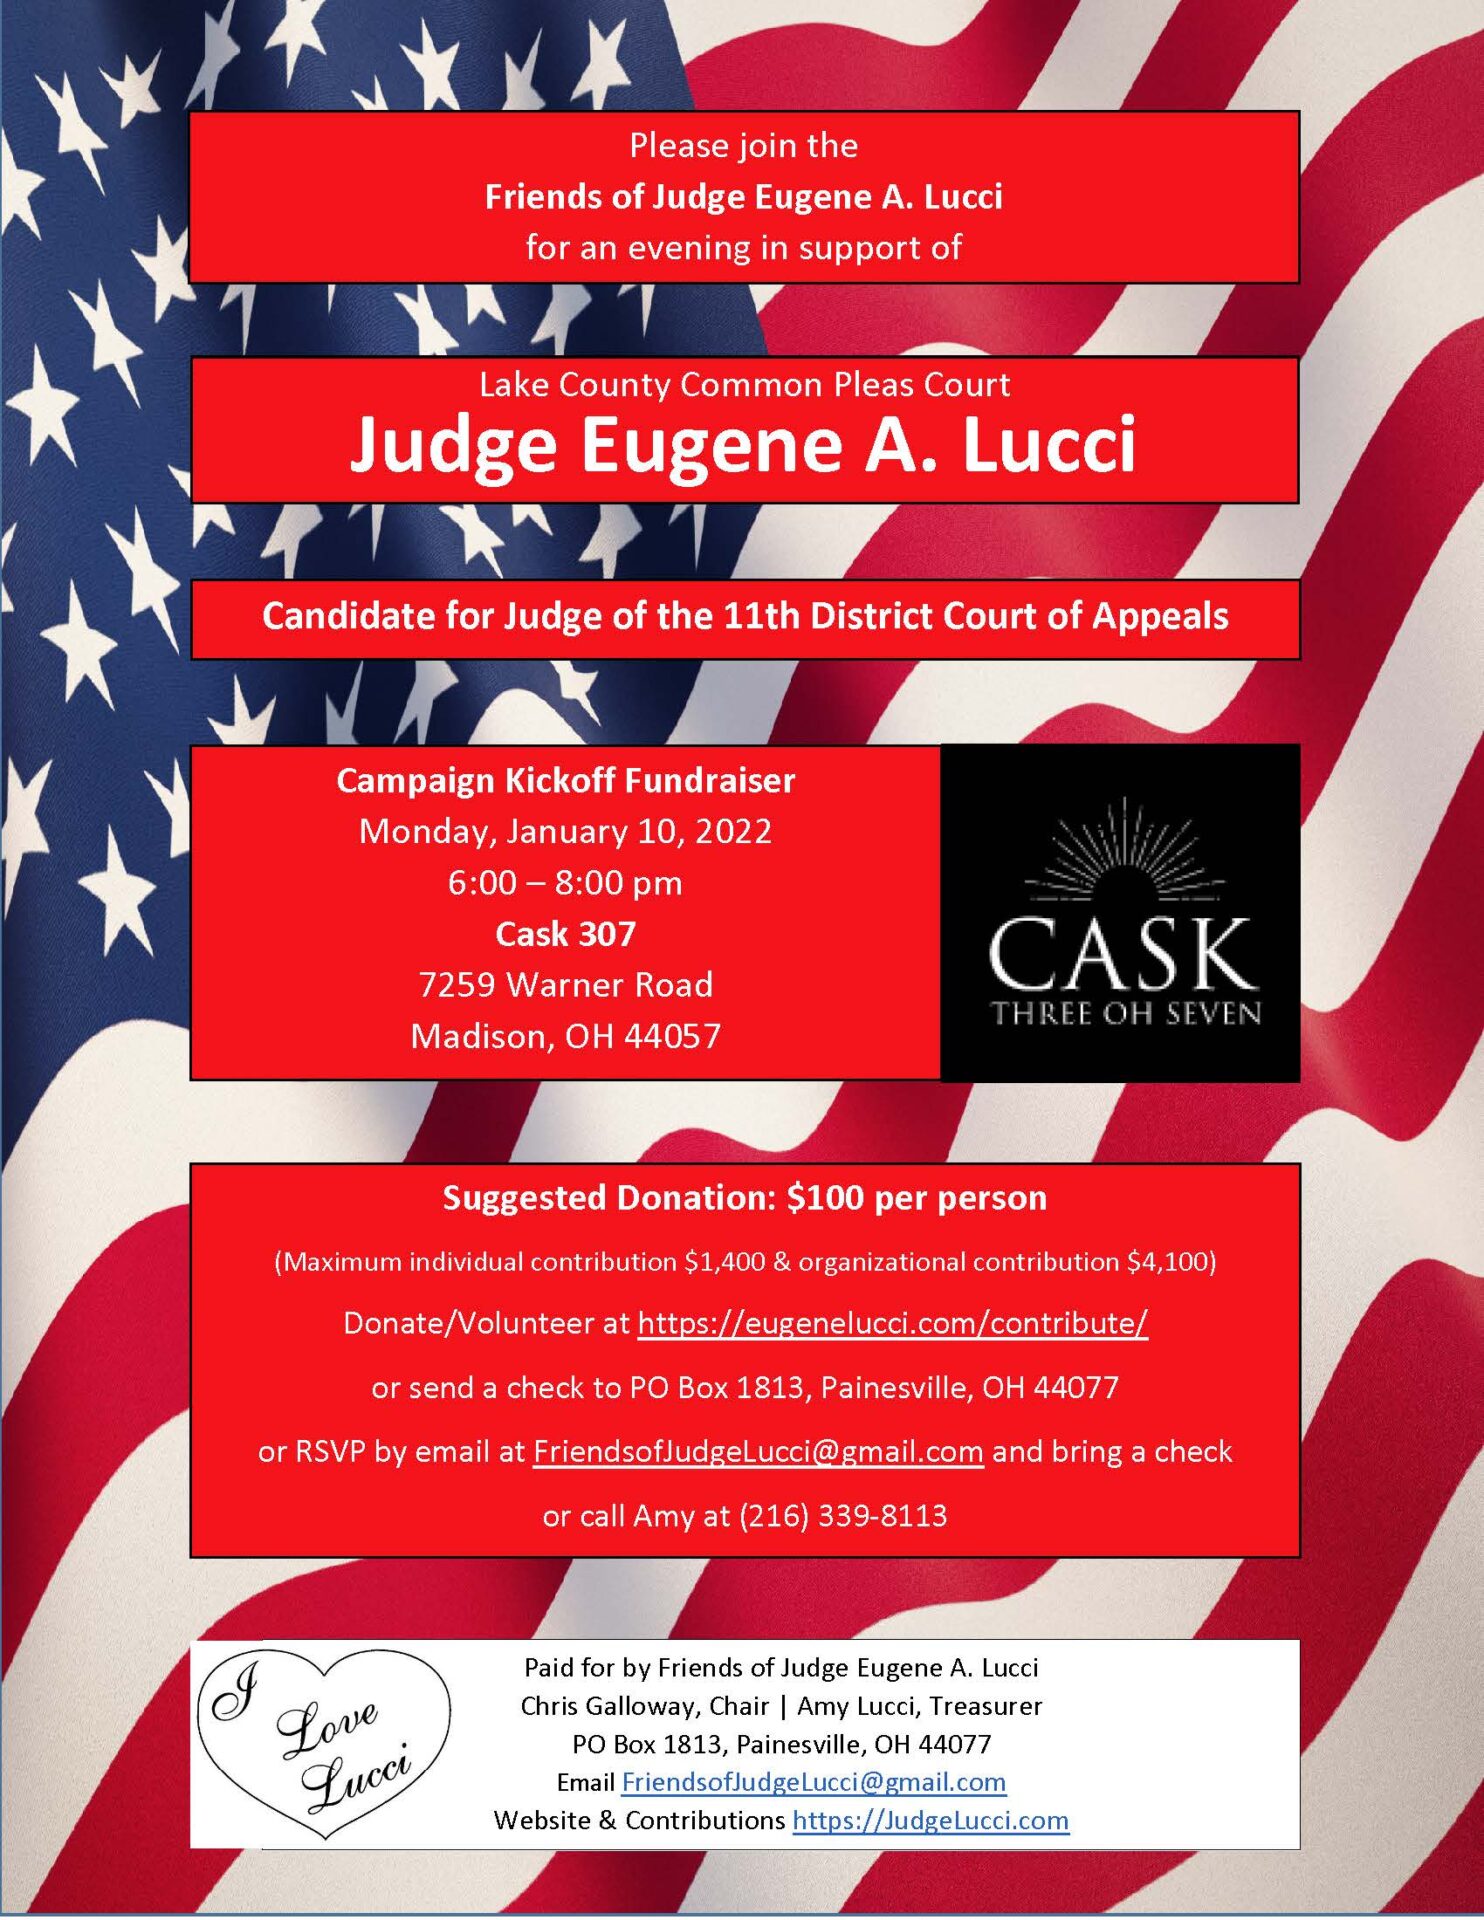 Judge Lucci - Invitation Cask 307 fundraiser 1-10-2022